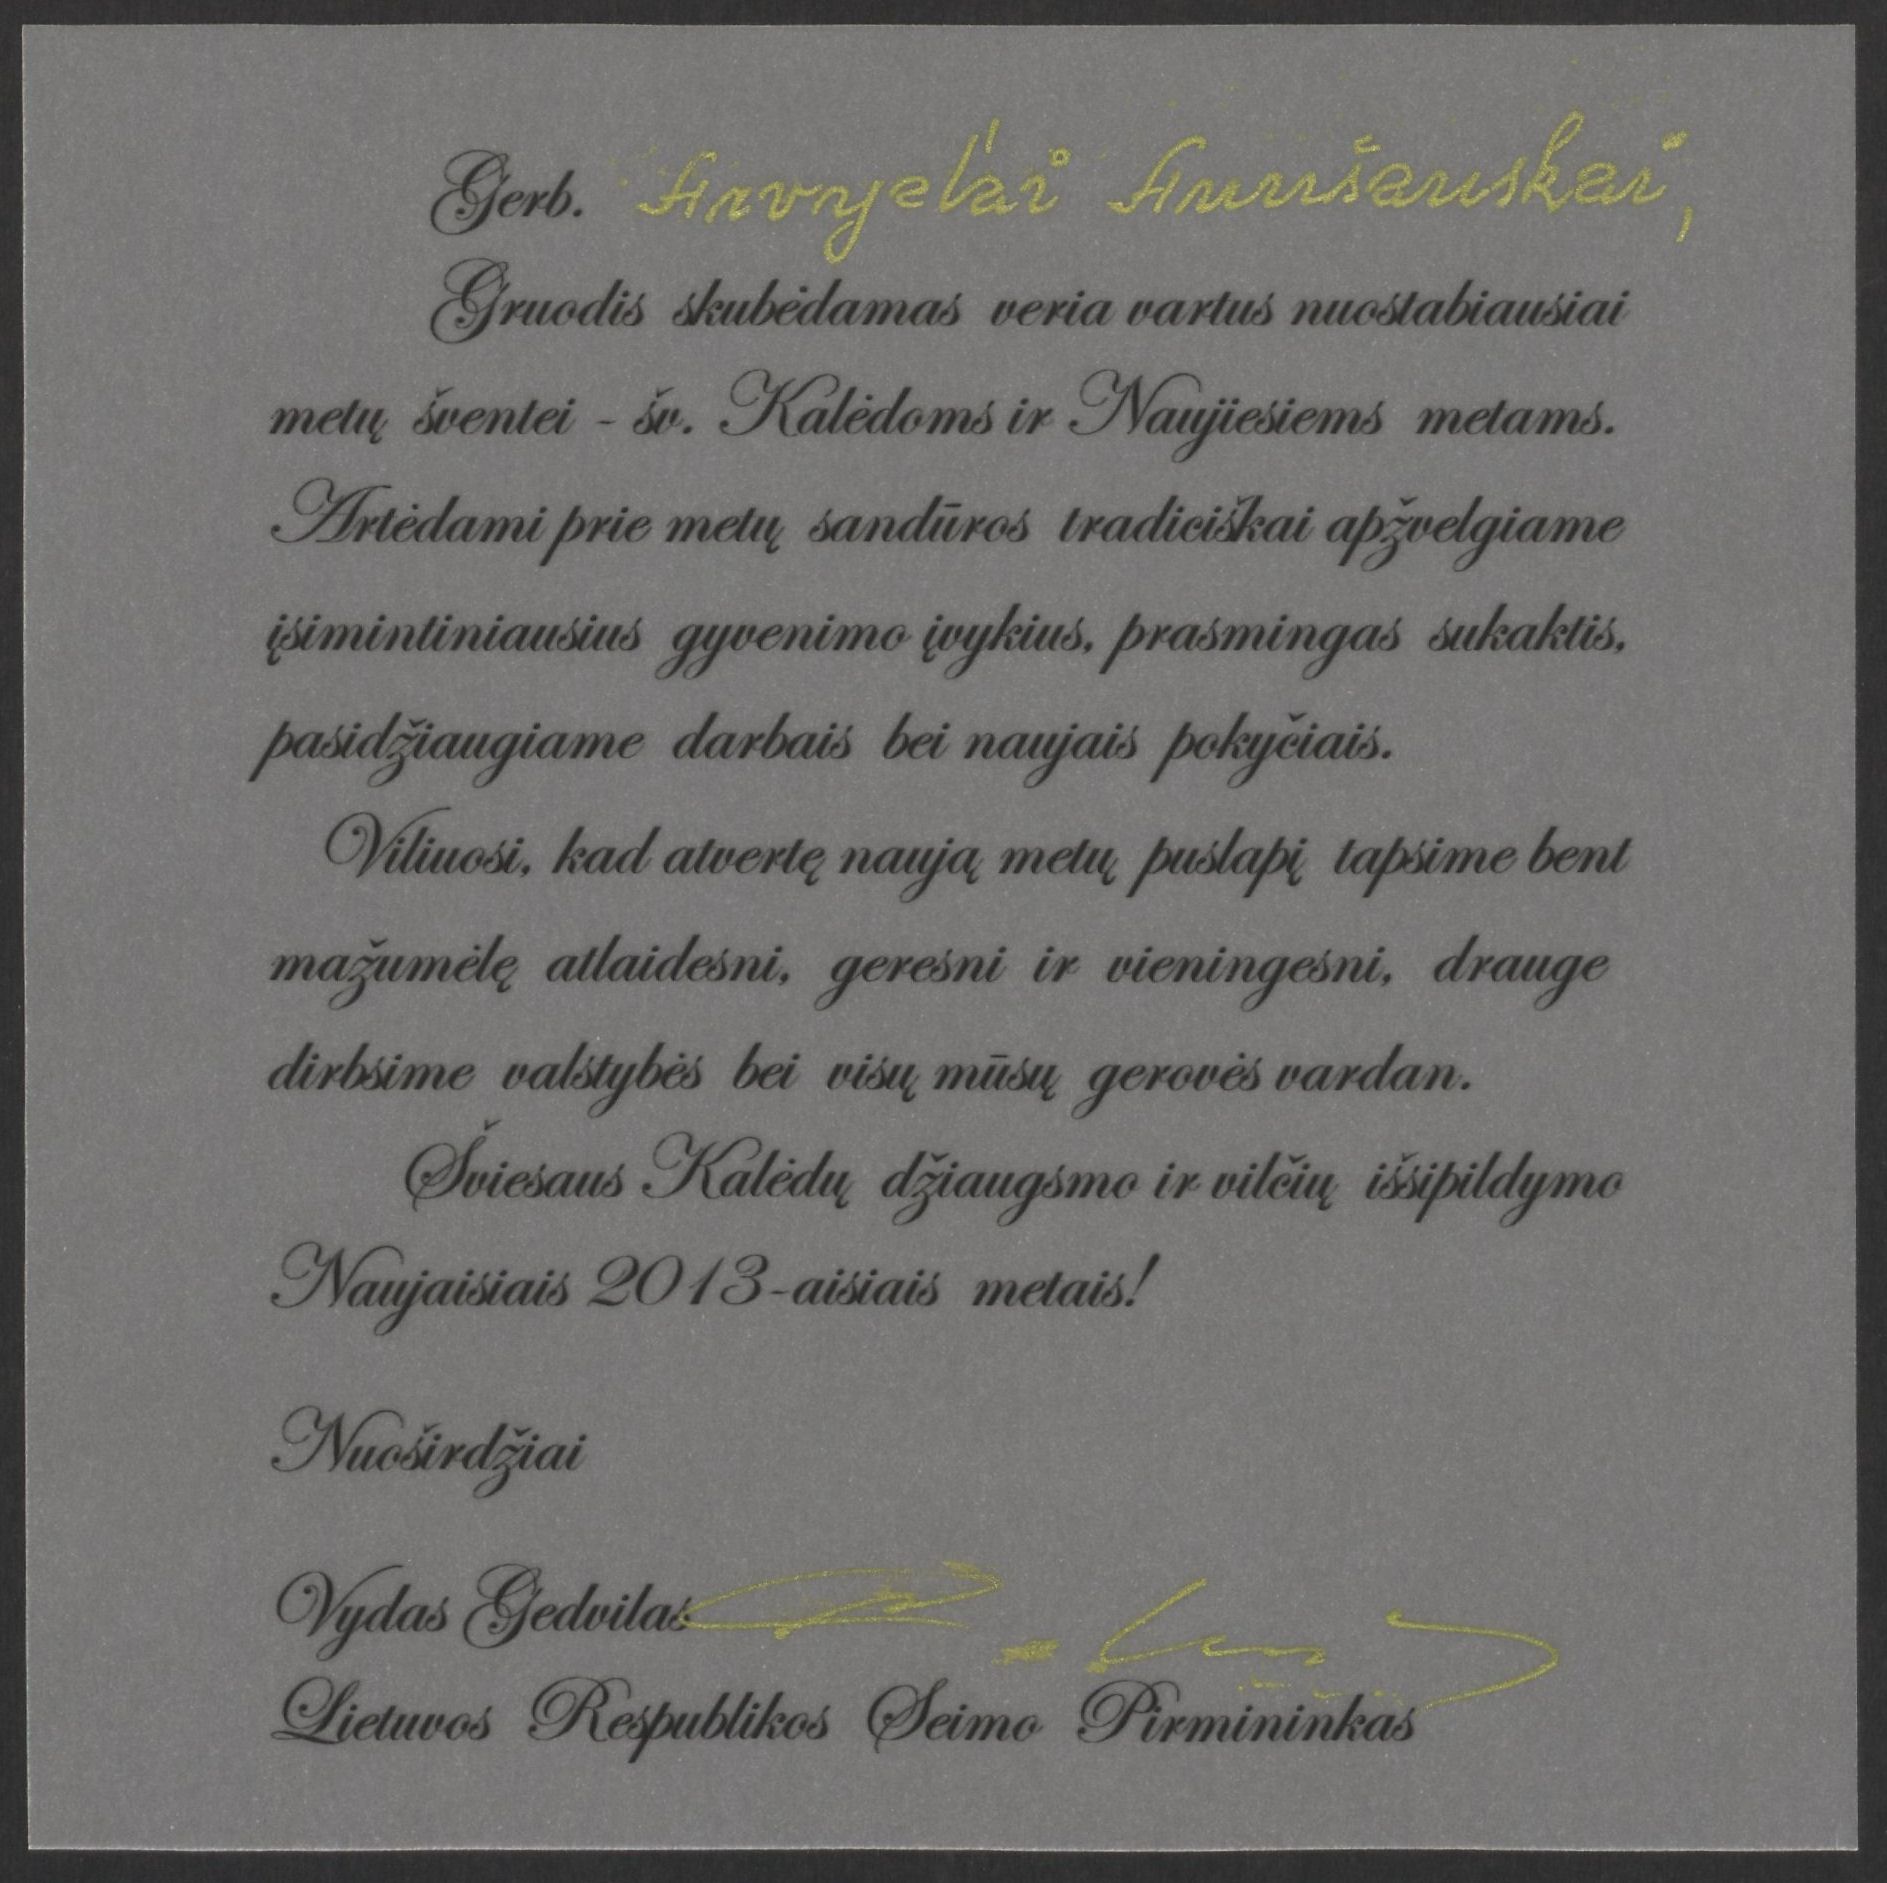 Lietuvos Respublikos Seimo pirmininko Vydo Gedvilo sveikinimas